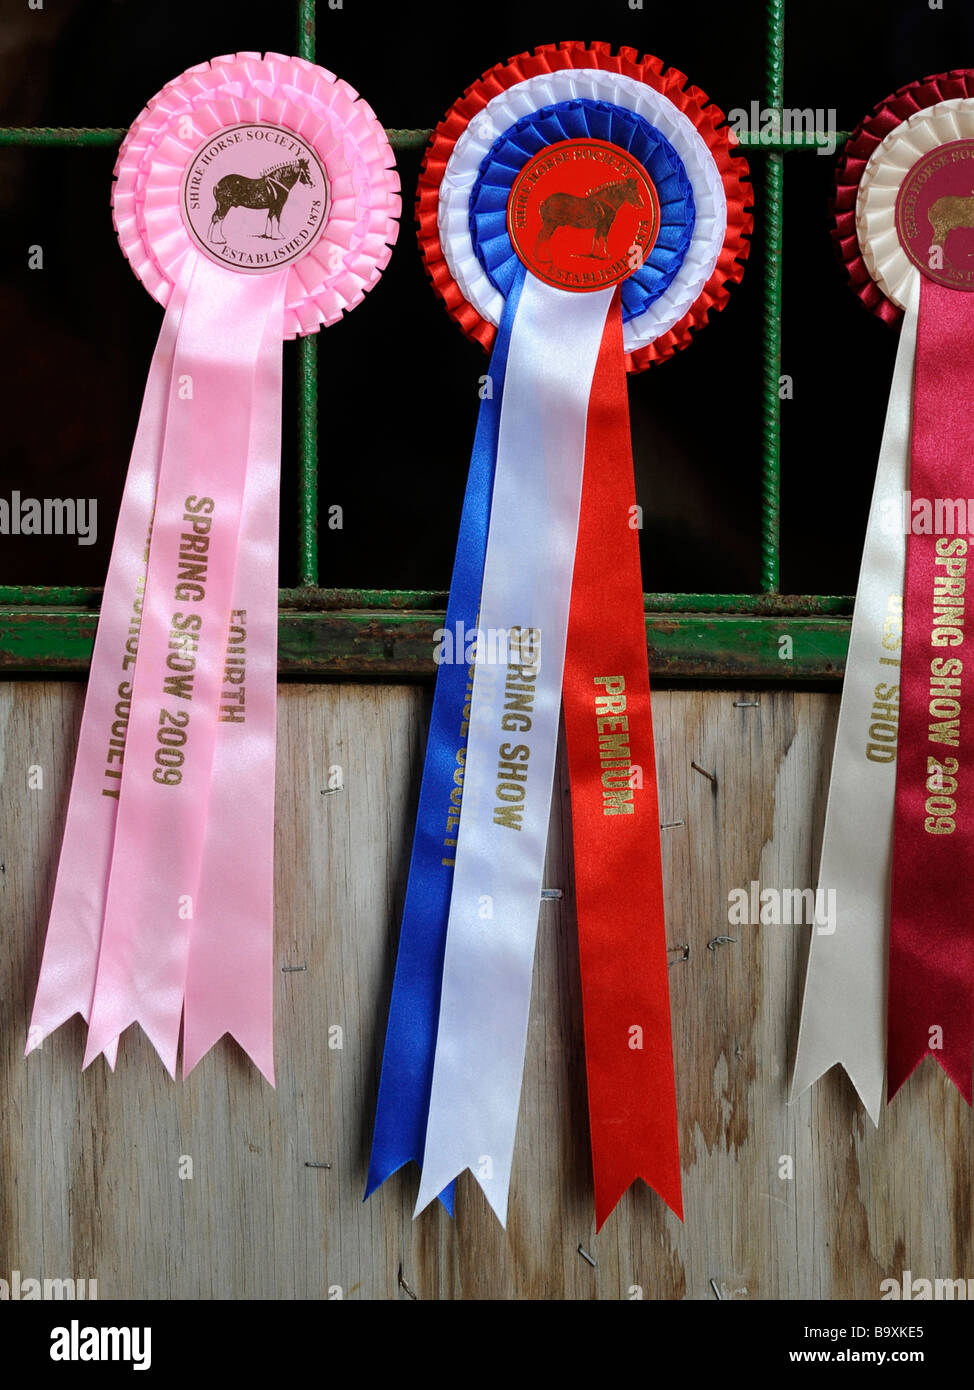 Cheval gagnant de la rosette Printemps Shire Horse Show 2009. Banque D'Images